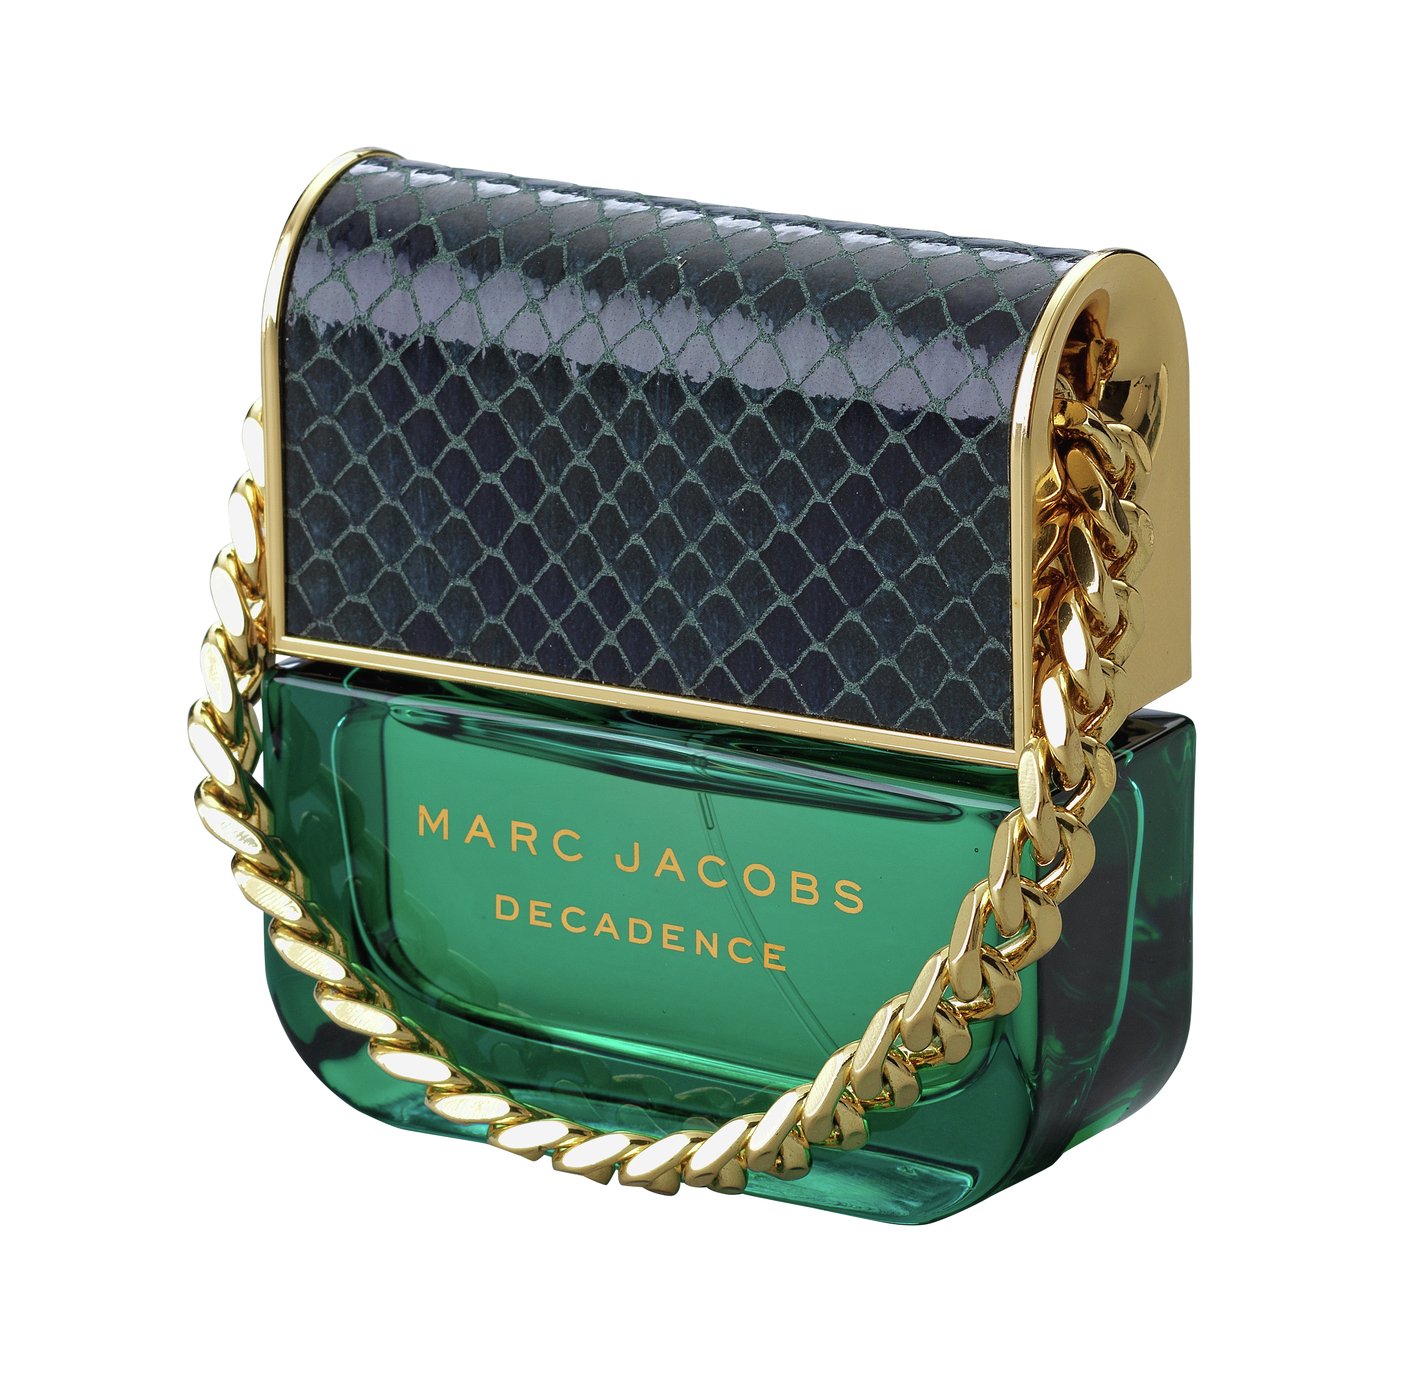 Marc Jacobs Decadence Eau de Parfum - 30ml